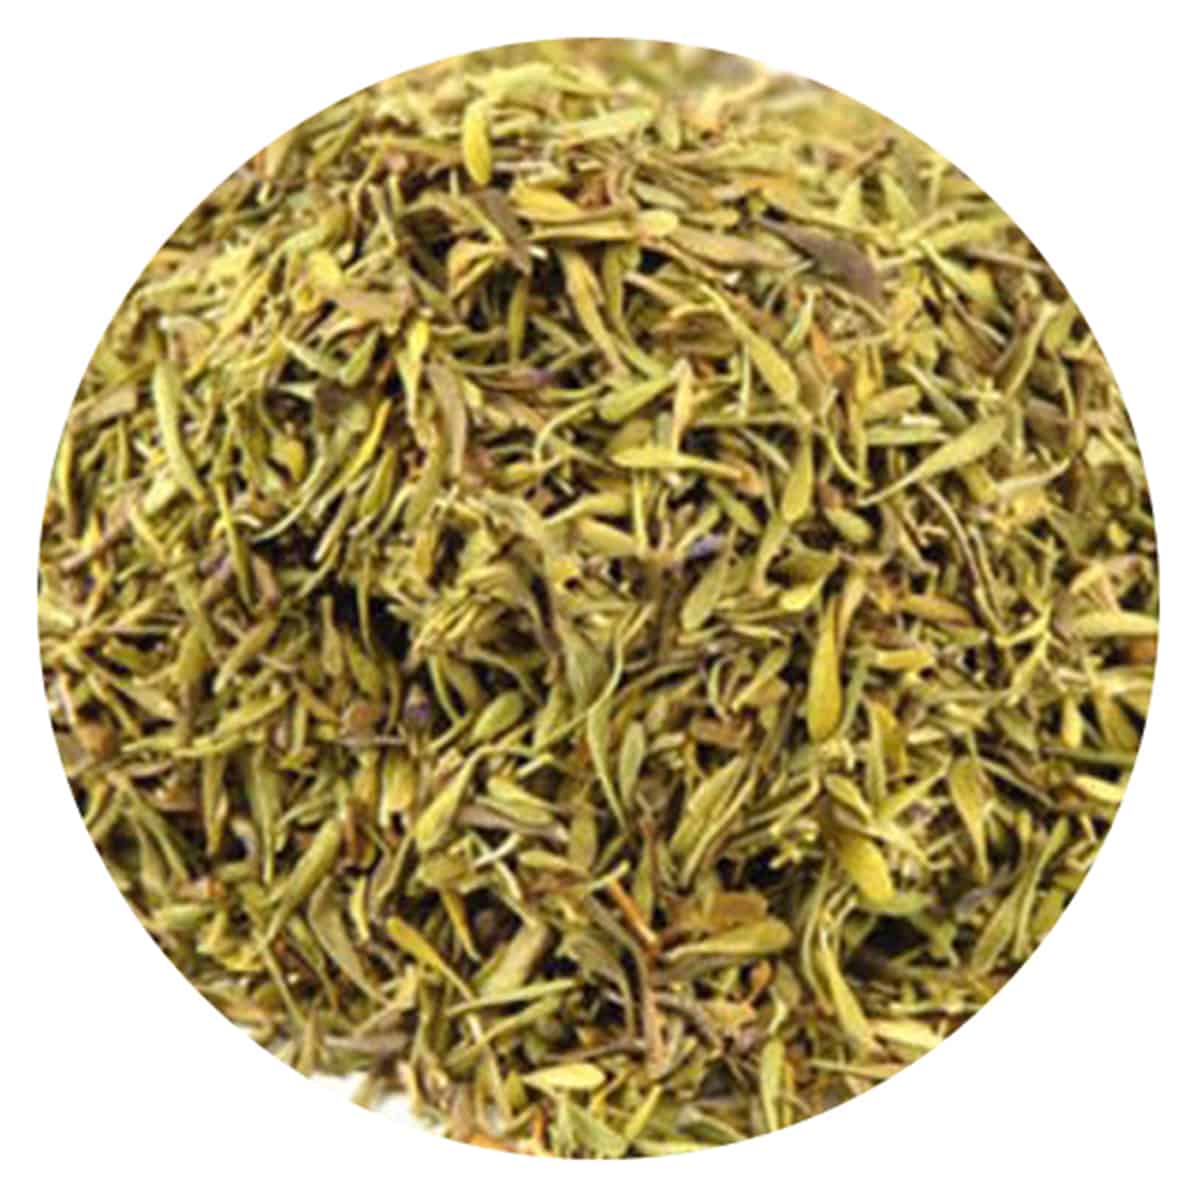 Buy IAG Foods Dried Thyme Leaves - 1 kg